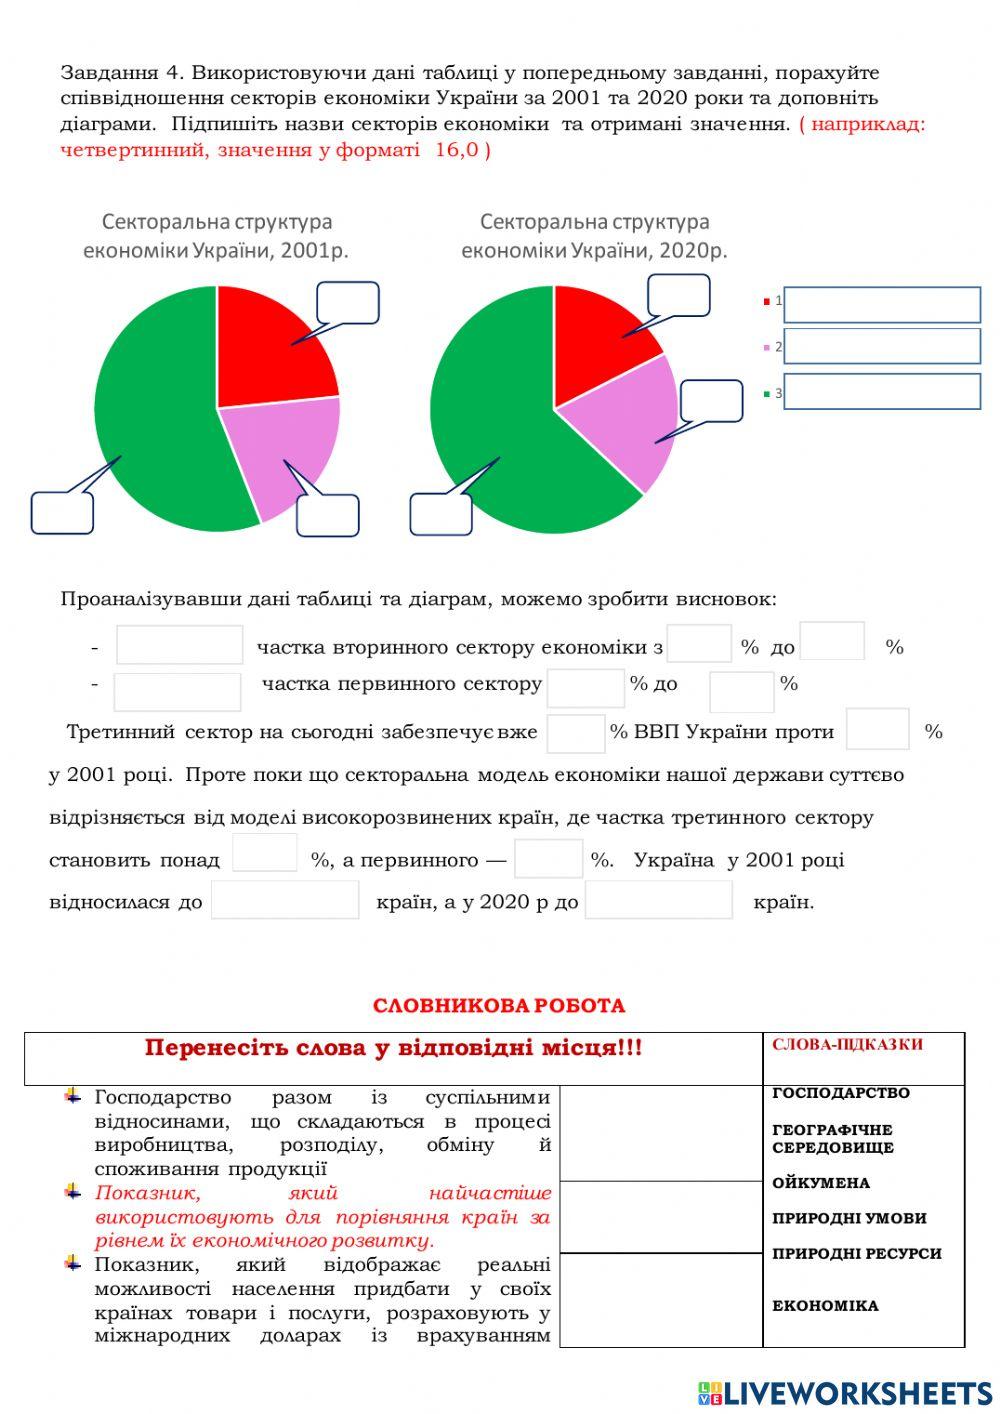 Практична робота 10 Аналіз секторальної структури економіки України 11 клас